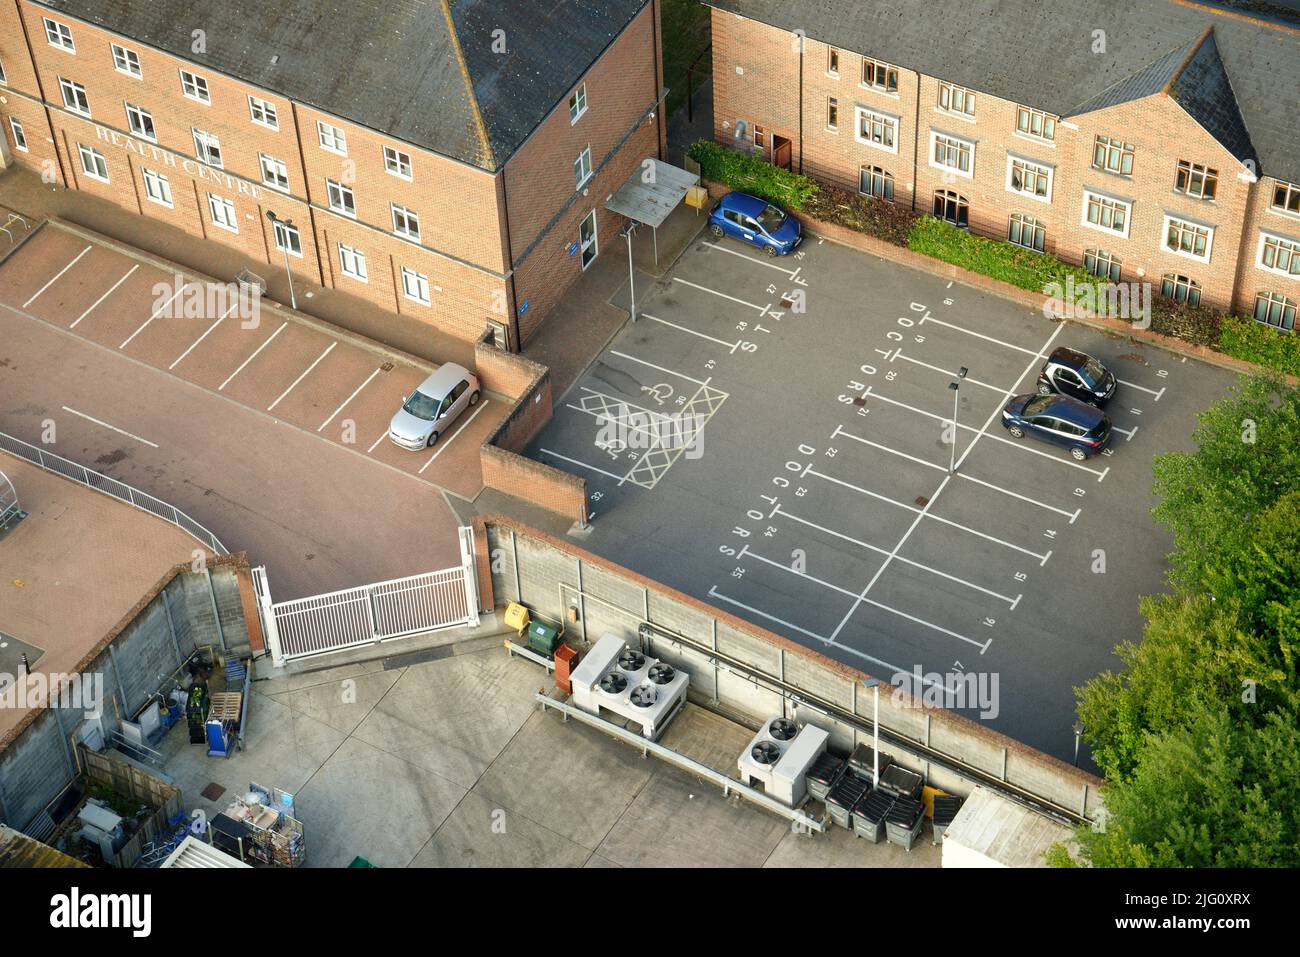 Un centro de salud inglés con un aparcamiento casi vacío. Sólo unos pocos coches aparcados. Foto de stock